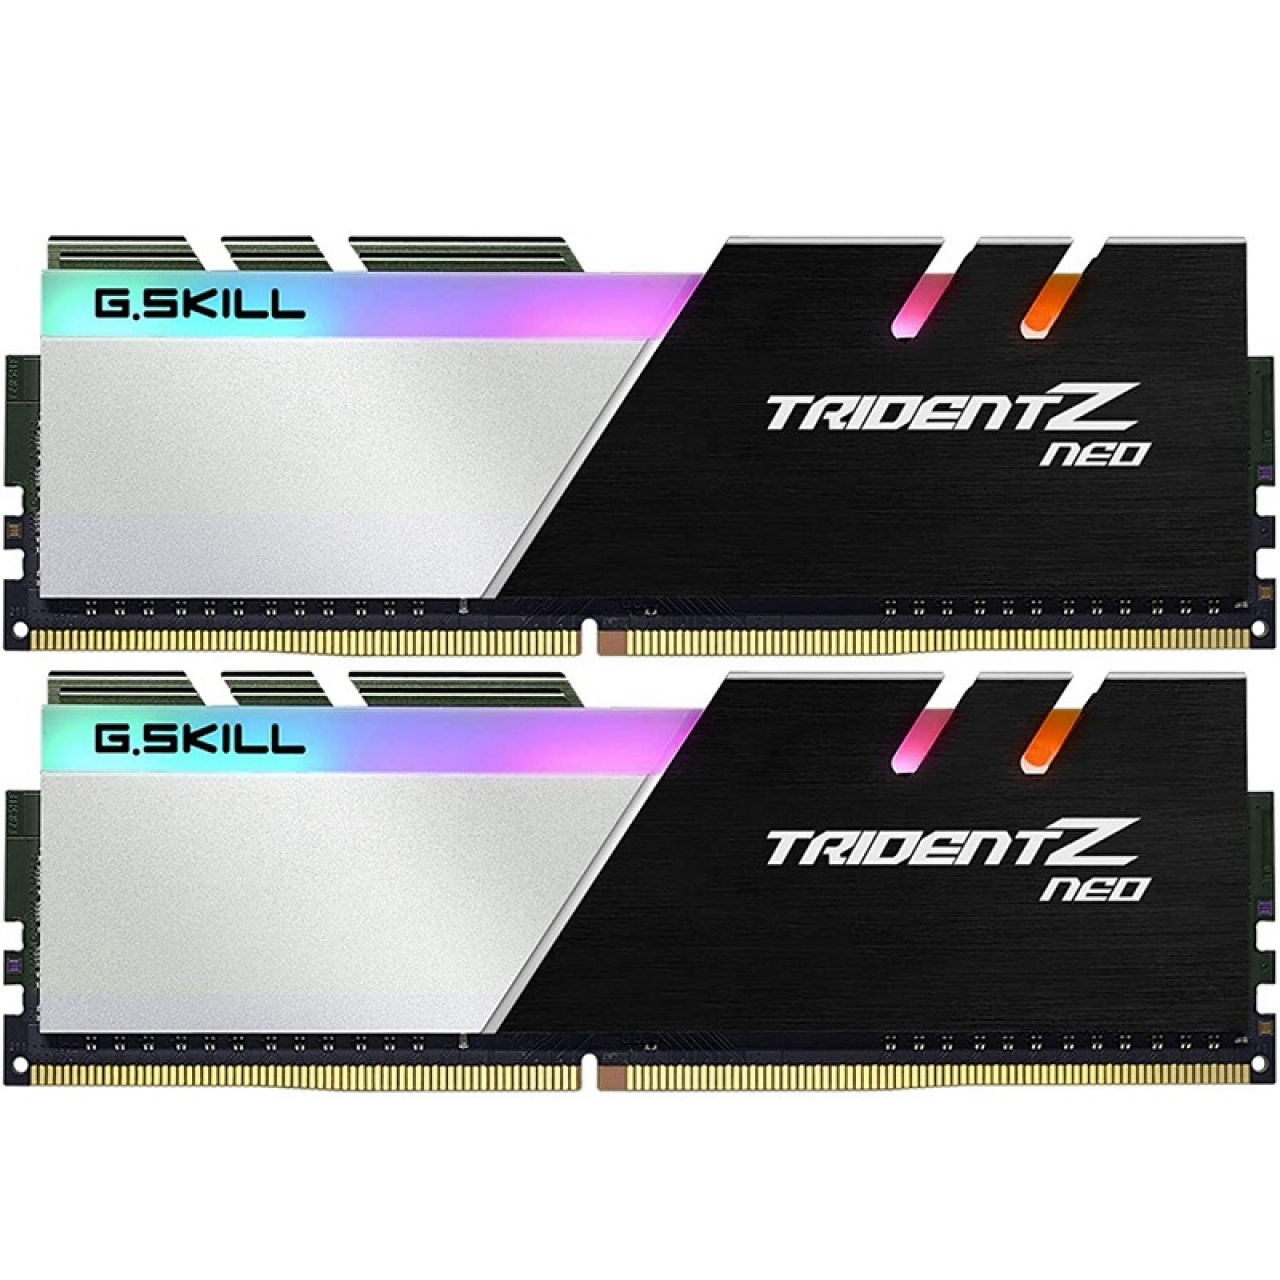 GSKILL 32GB (2X16GB) DDR4 3200MHZ CL16 RGB DUAL KIT PC RAM Trident Z F4-3200C16D-32GTZR